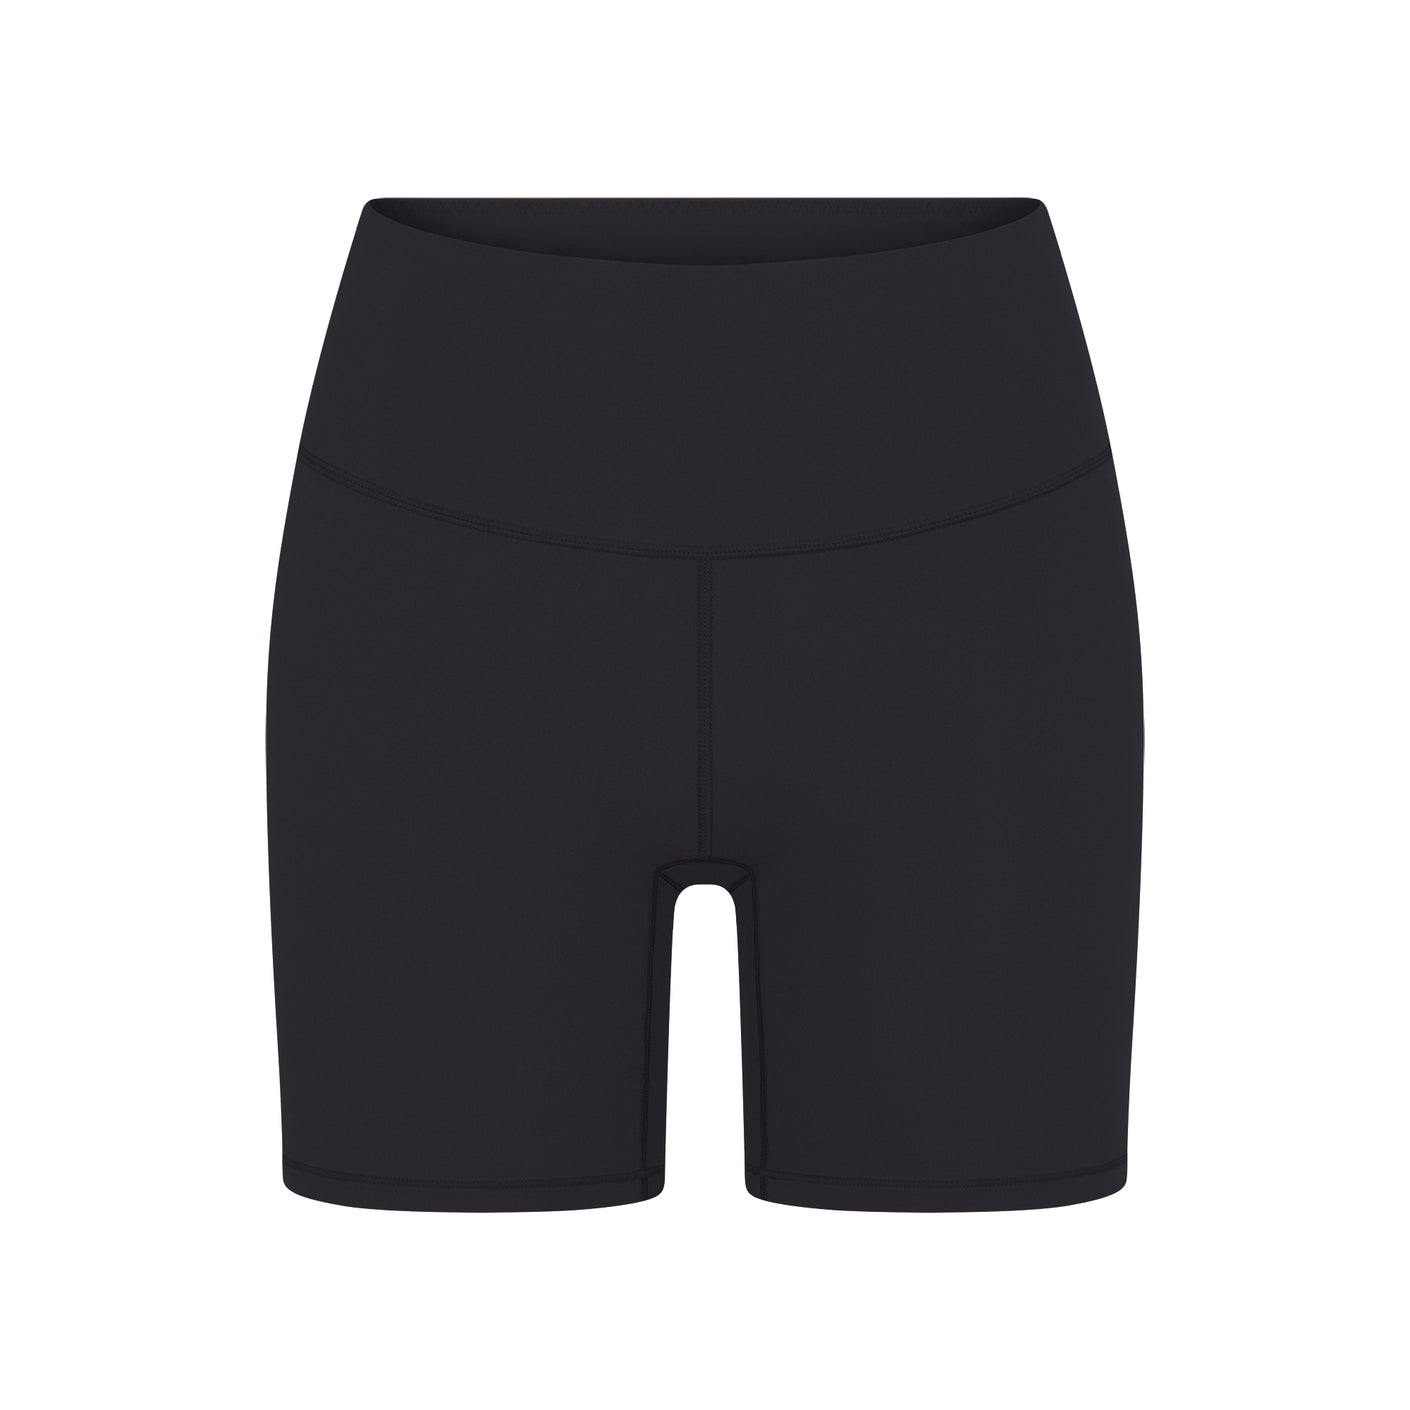 SKIMS High Waisted Bonded Shorts ONYX (S) Style#:SH-HWT-0020